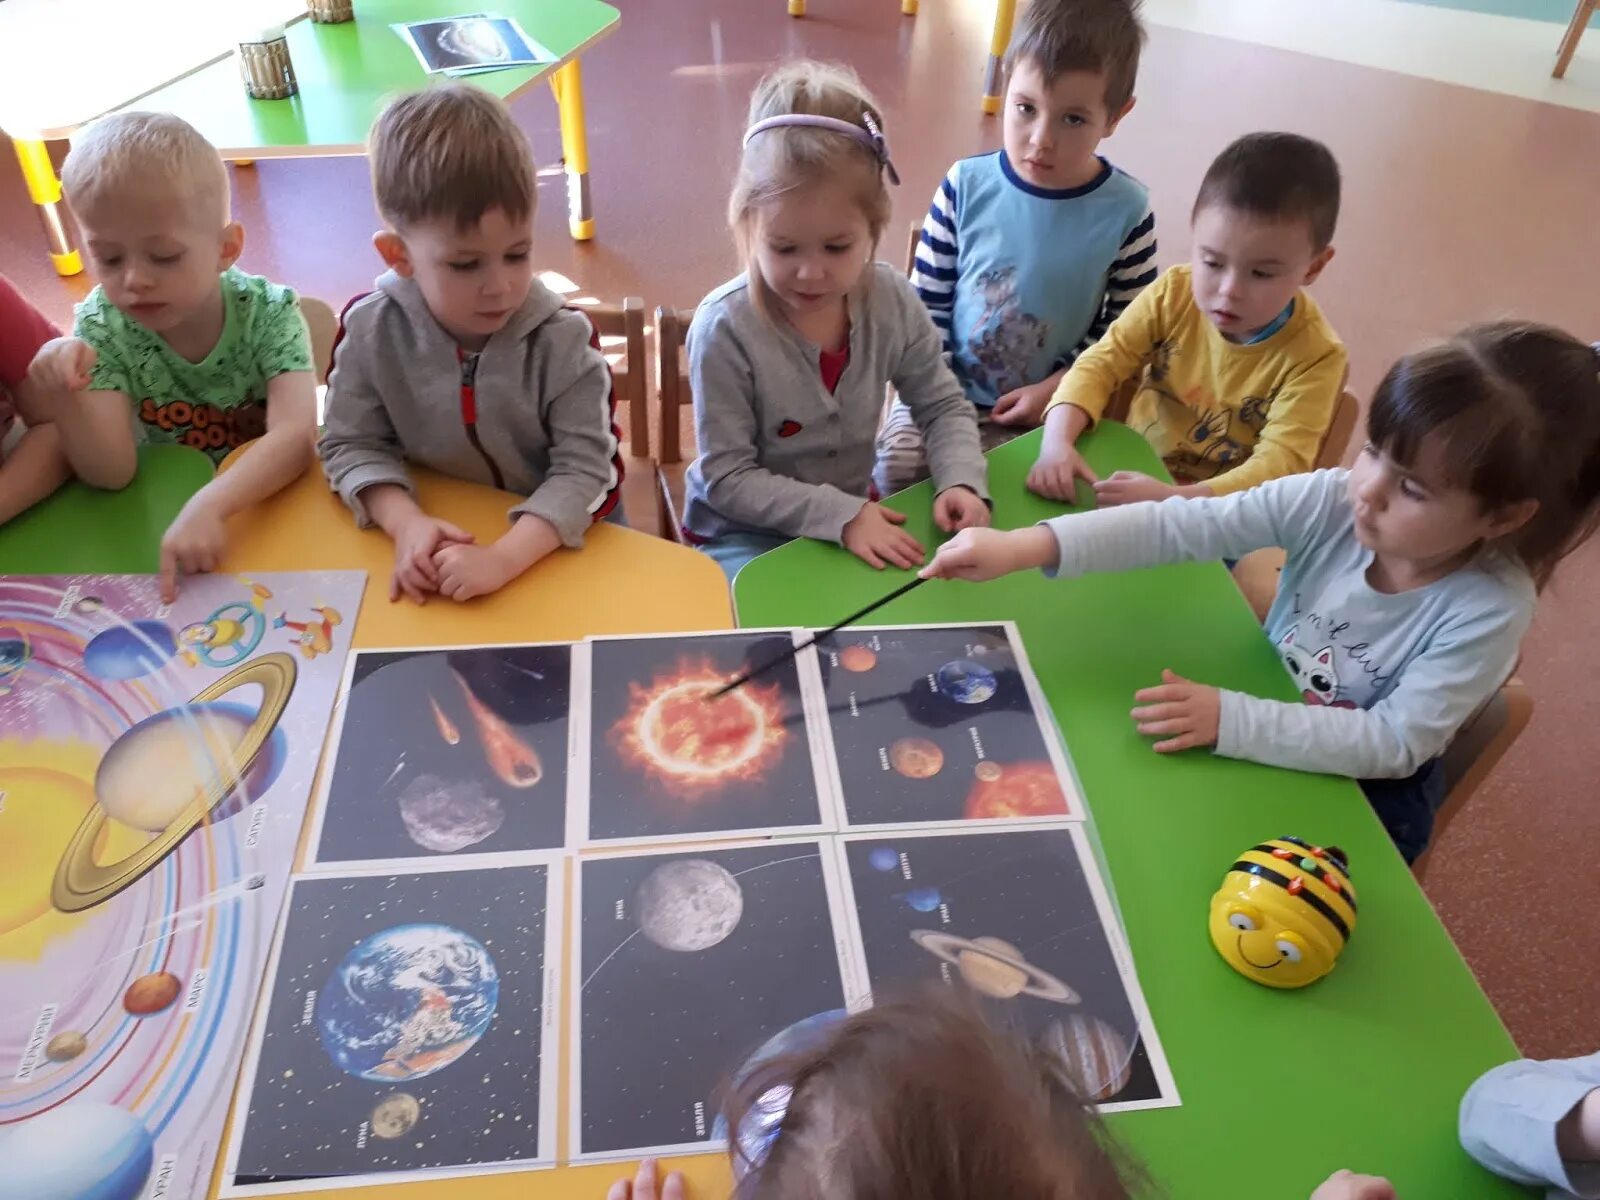 Космическое занятие в садике. Занятия про космос в детском саду. Дети изучают планеты в детском саду. Дети изучают космос.